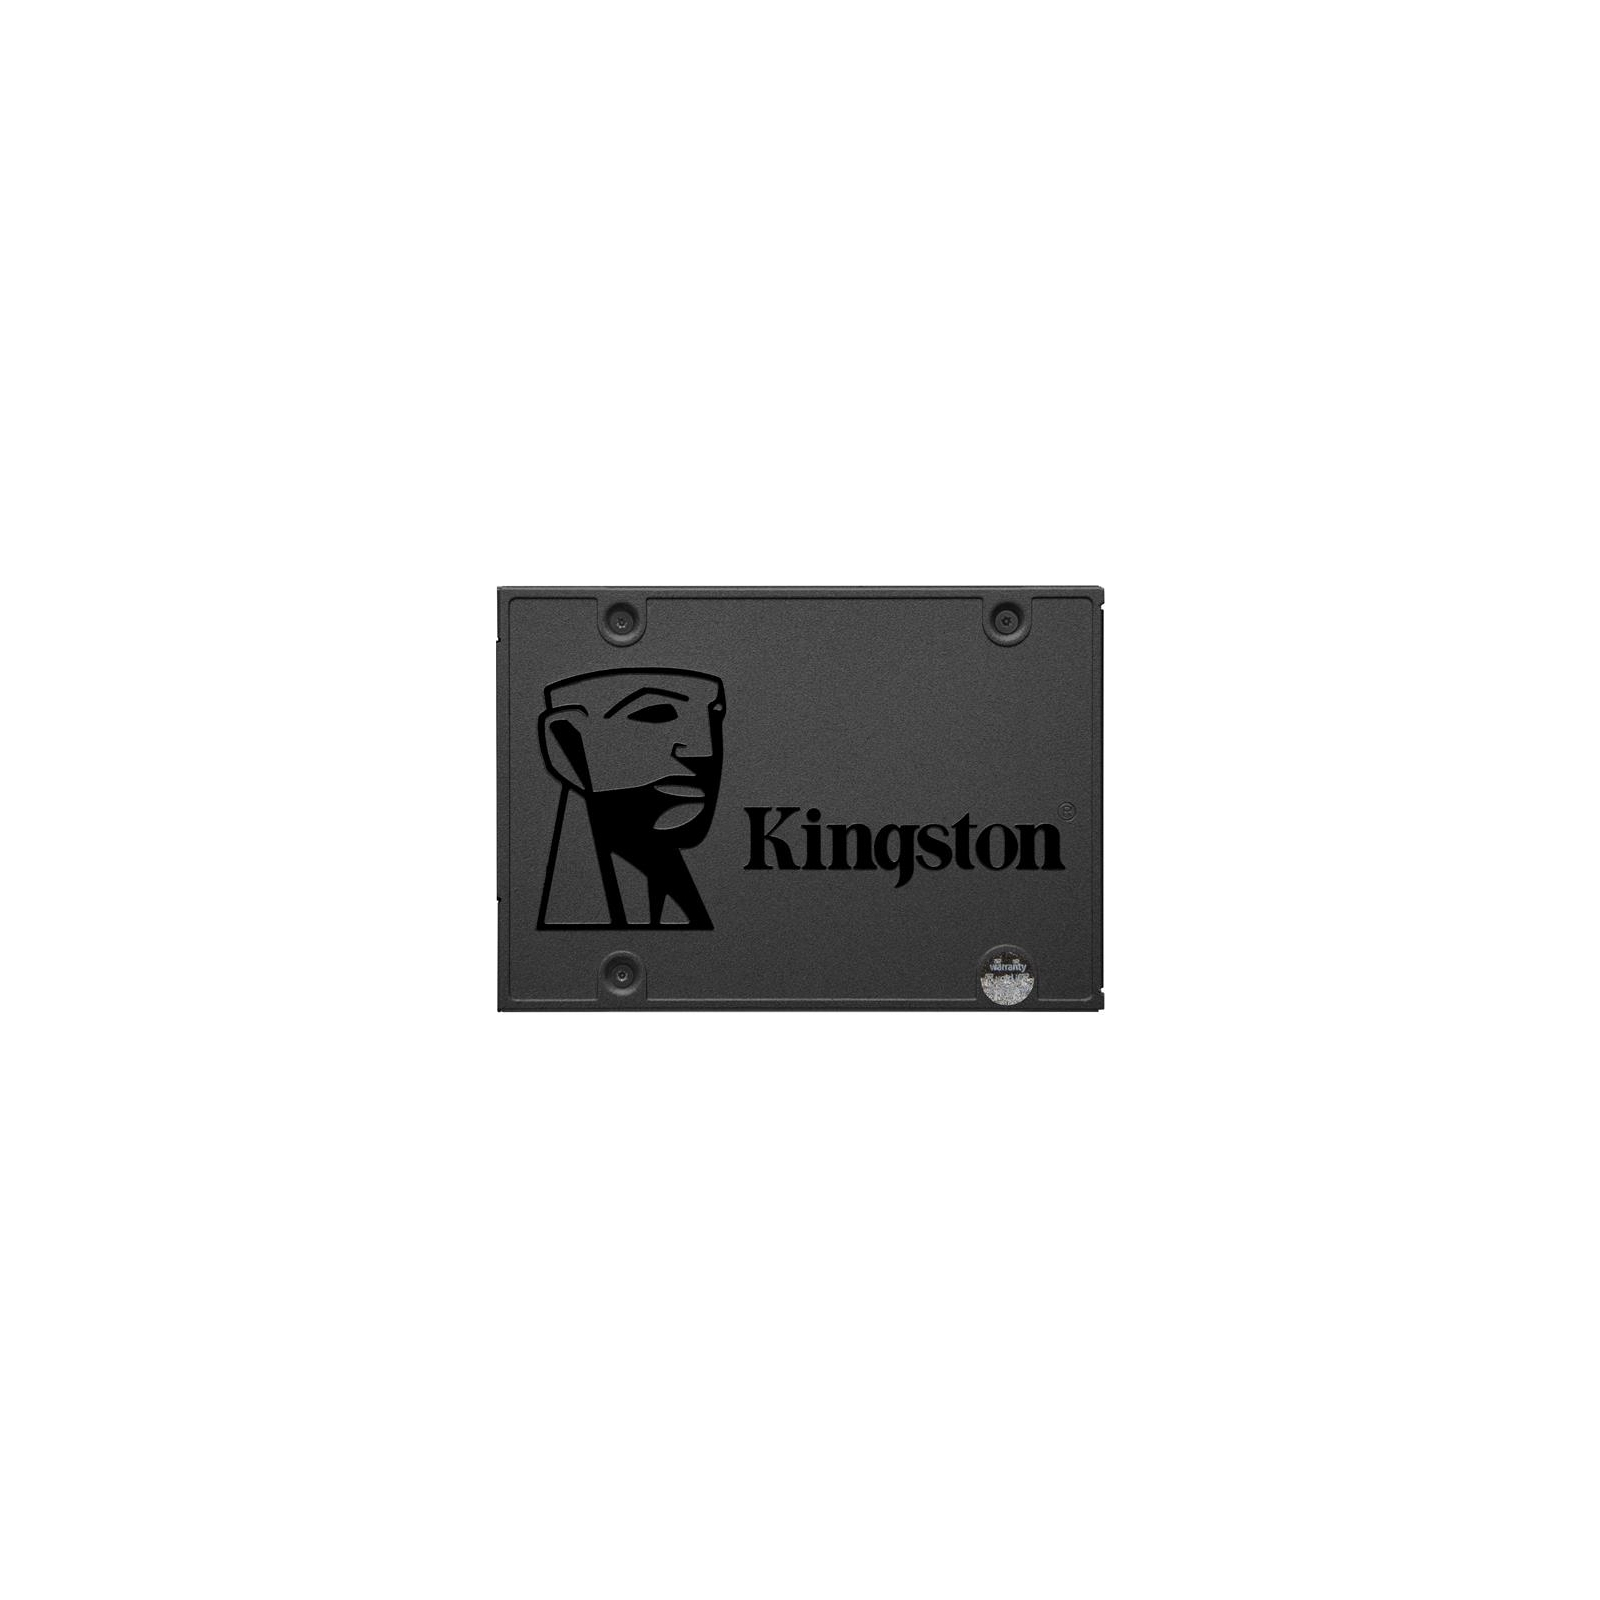 Накопитель SSD 2.5" 256GB Kingston (OCP0S3256Q-A0)